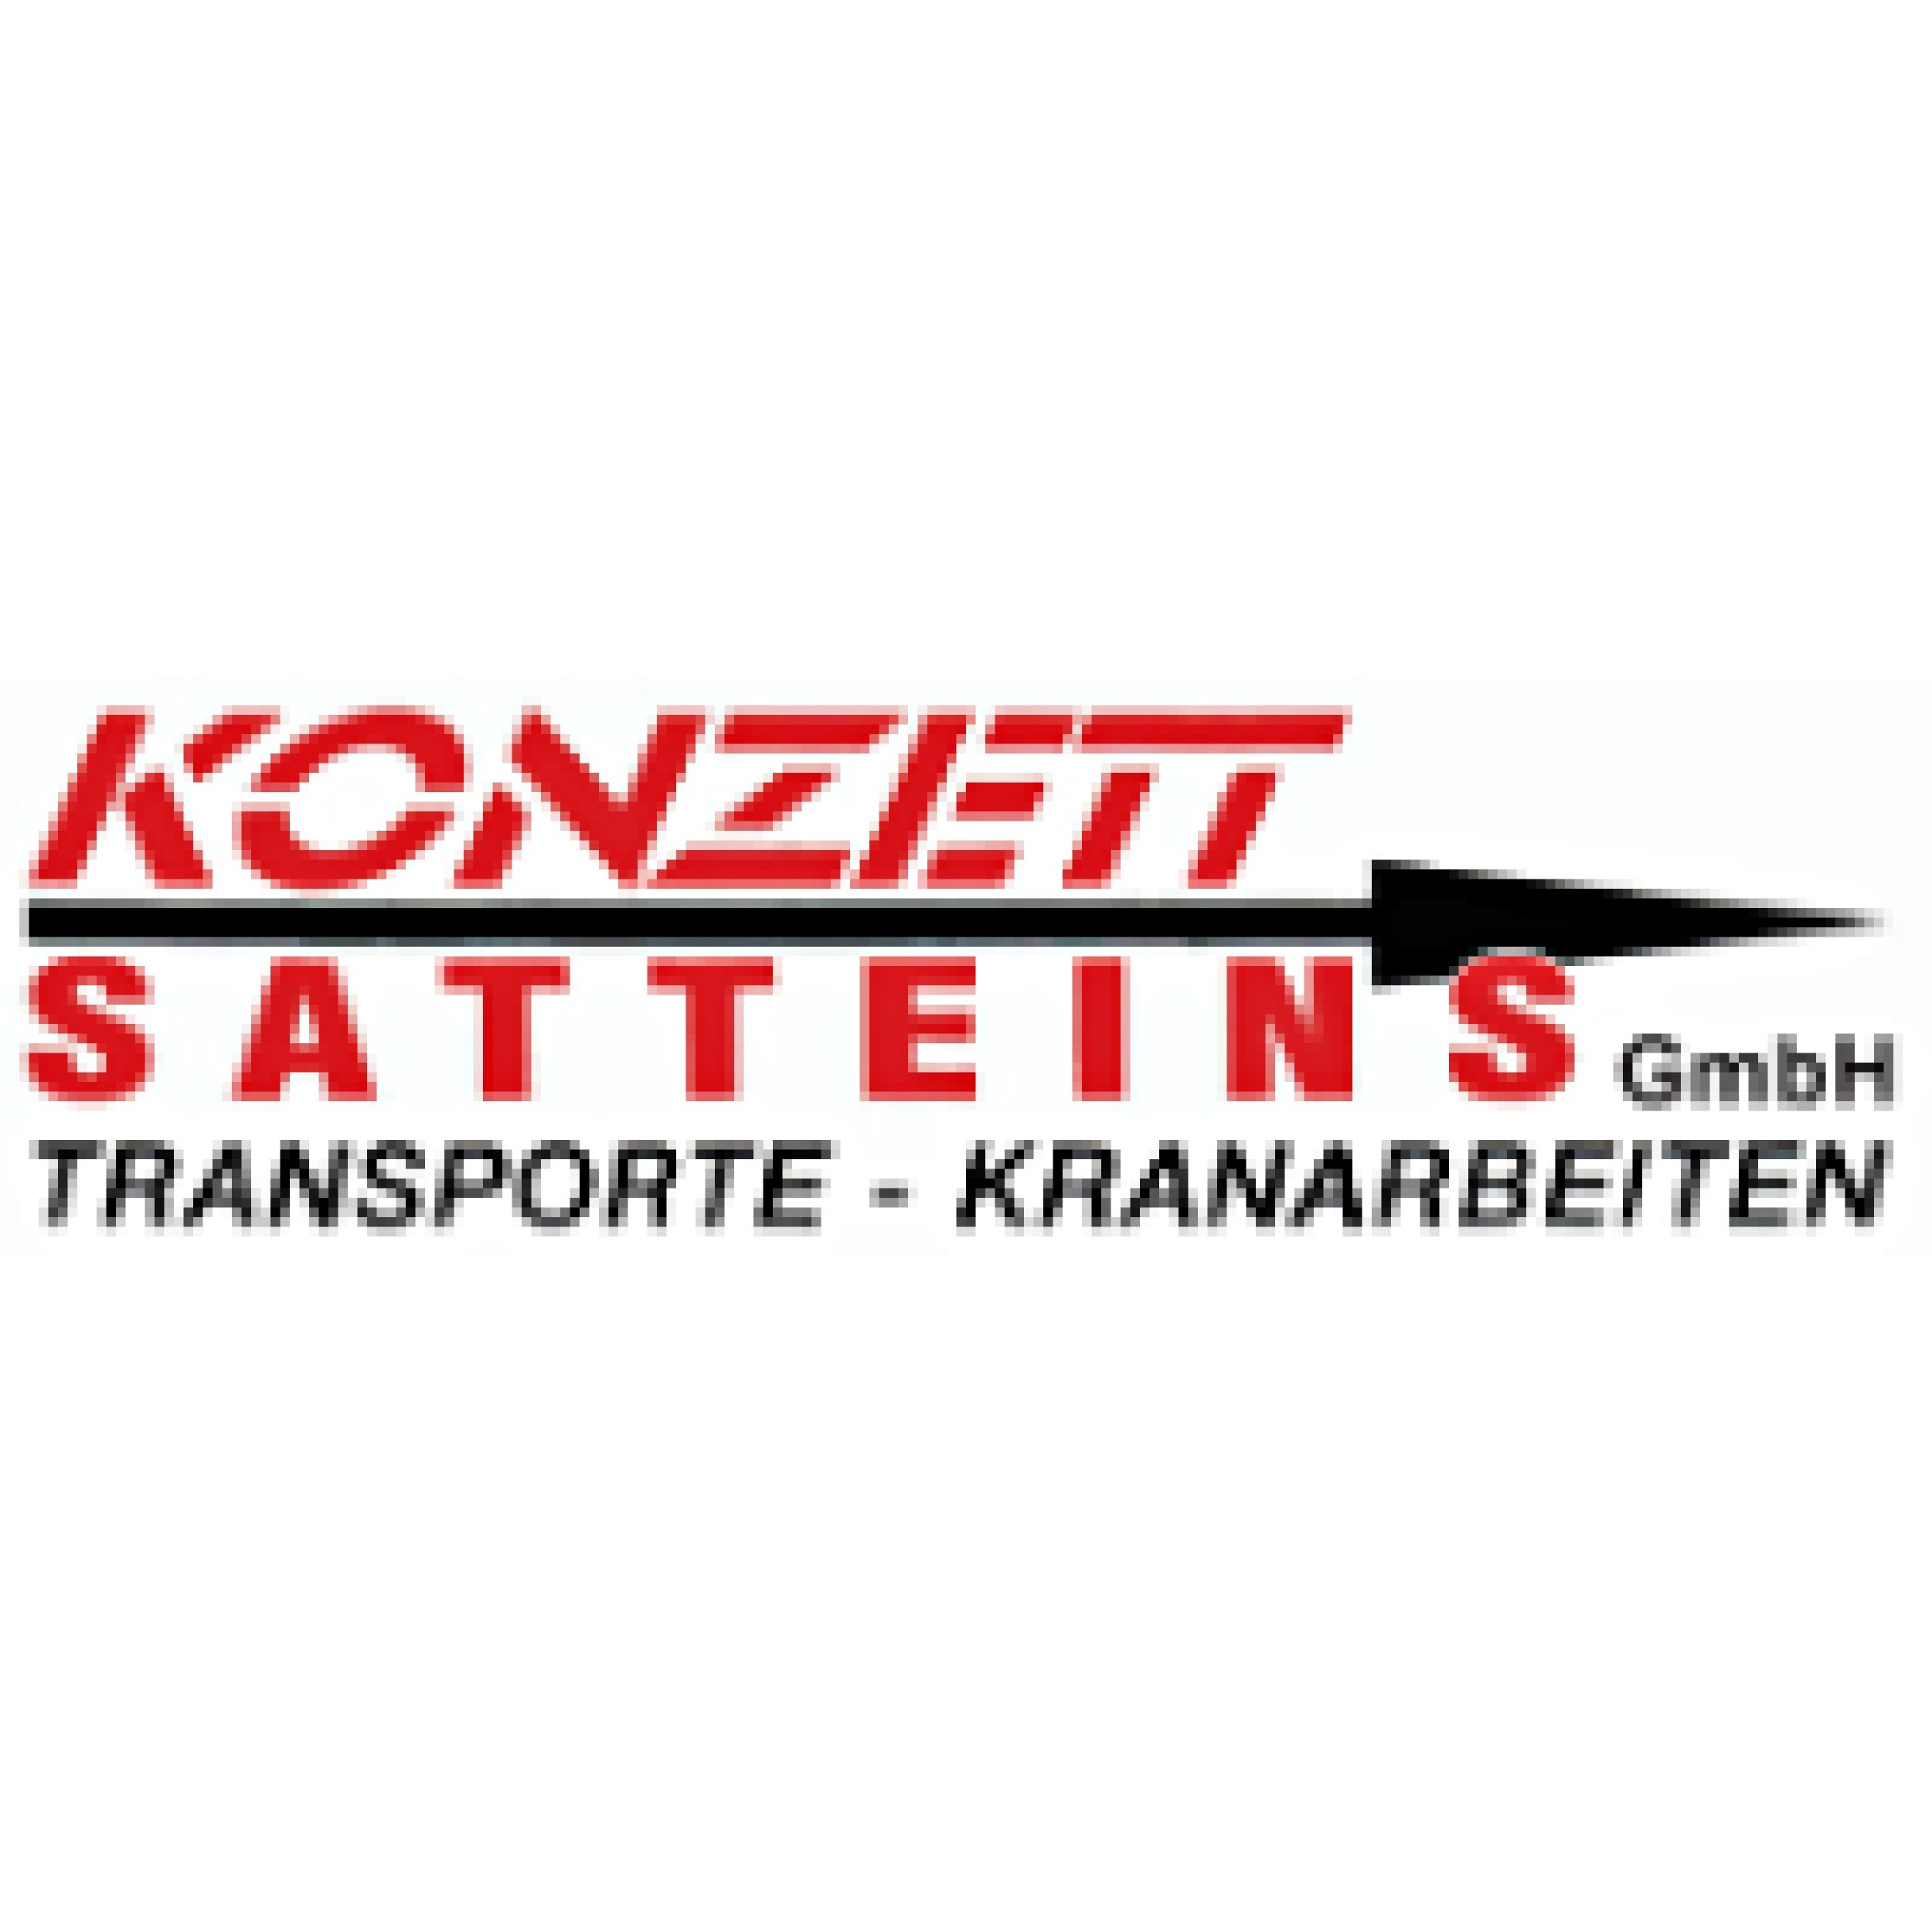 KONZETT Transport GmbH Transporte - Kranarbeiten